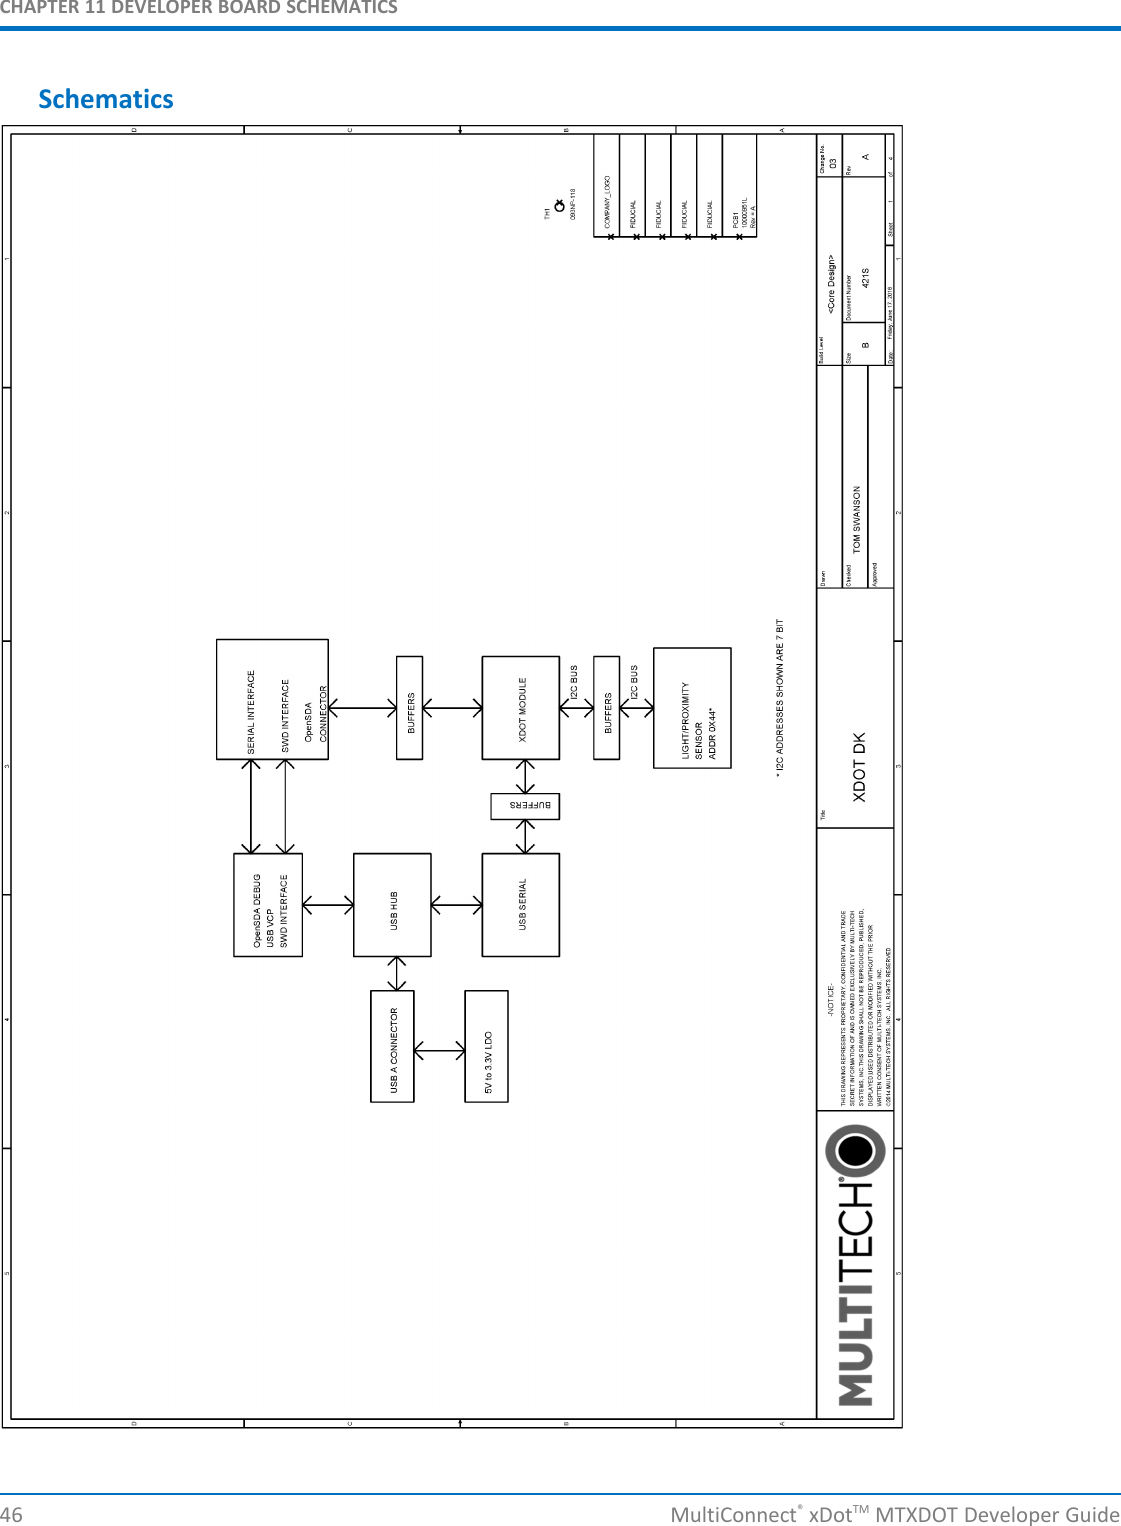 CHAPTER 11 DEVELOPER BOARD SCHEMATICS46 MultiConnect®xDotTM MTXDOT Developer GuideSchematics